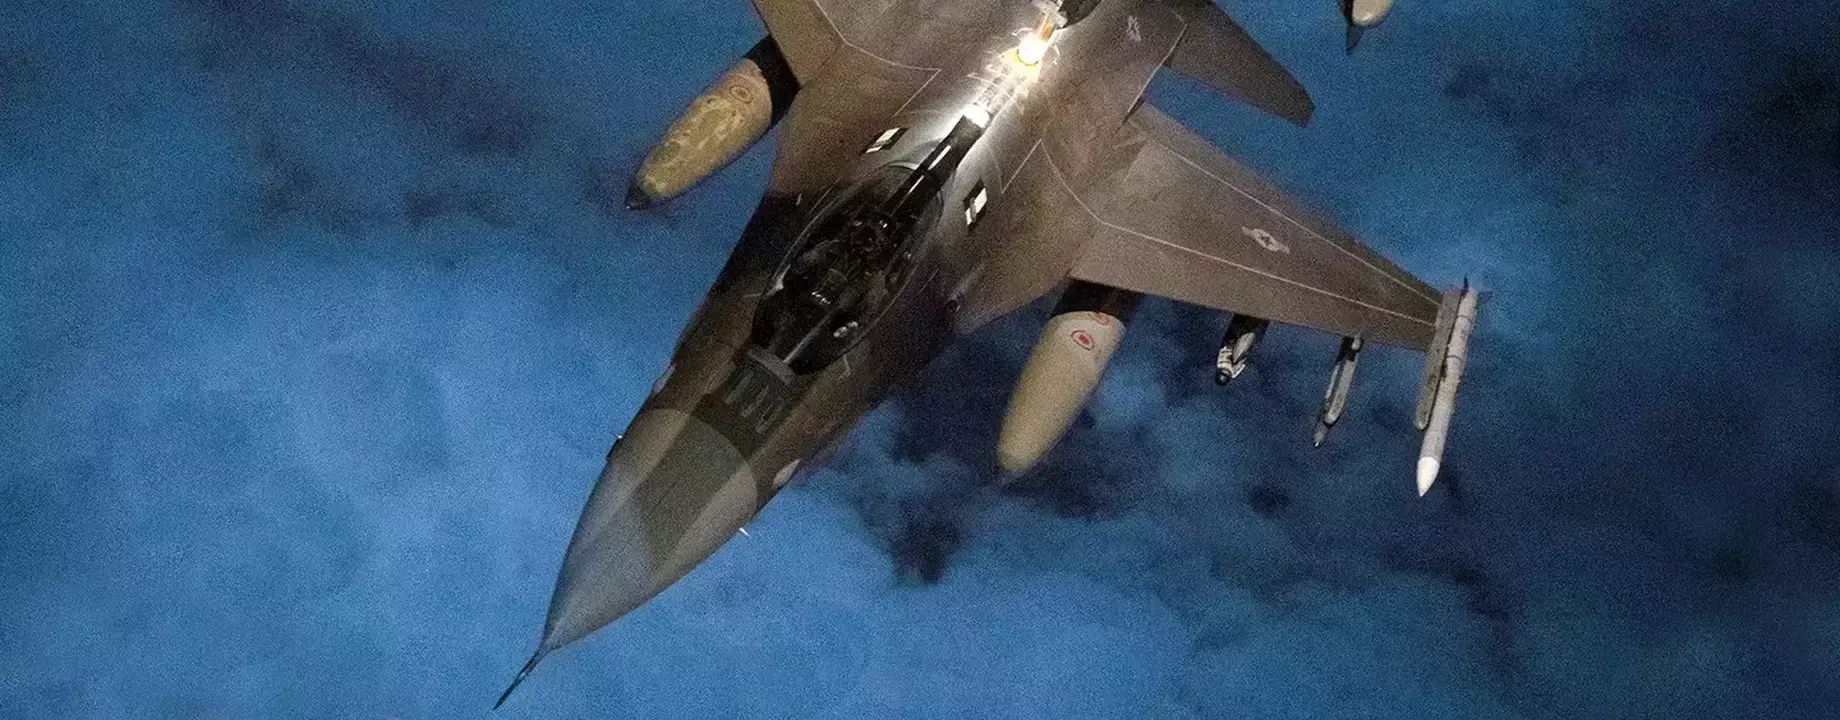 F16 Syria Airstrikes